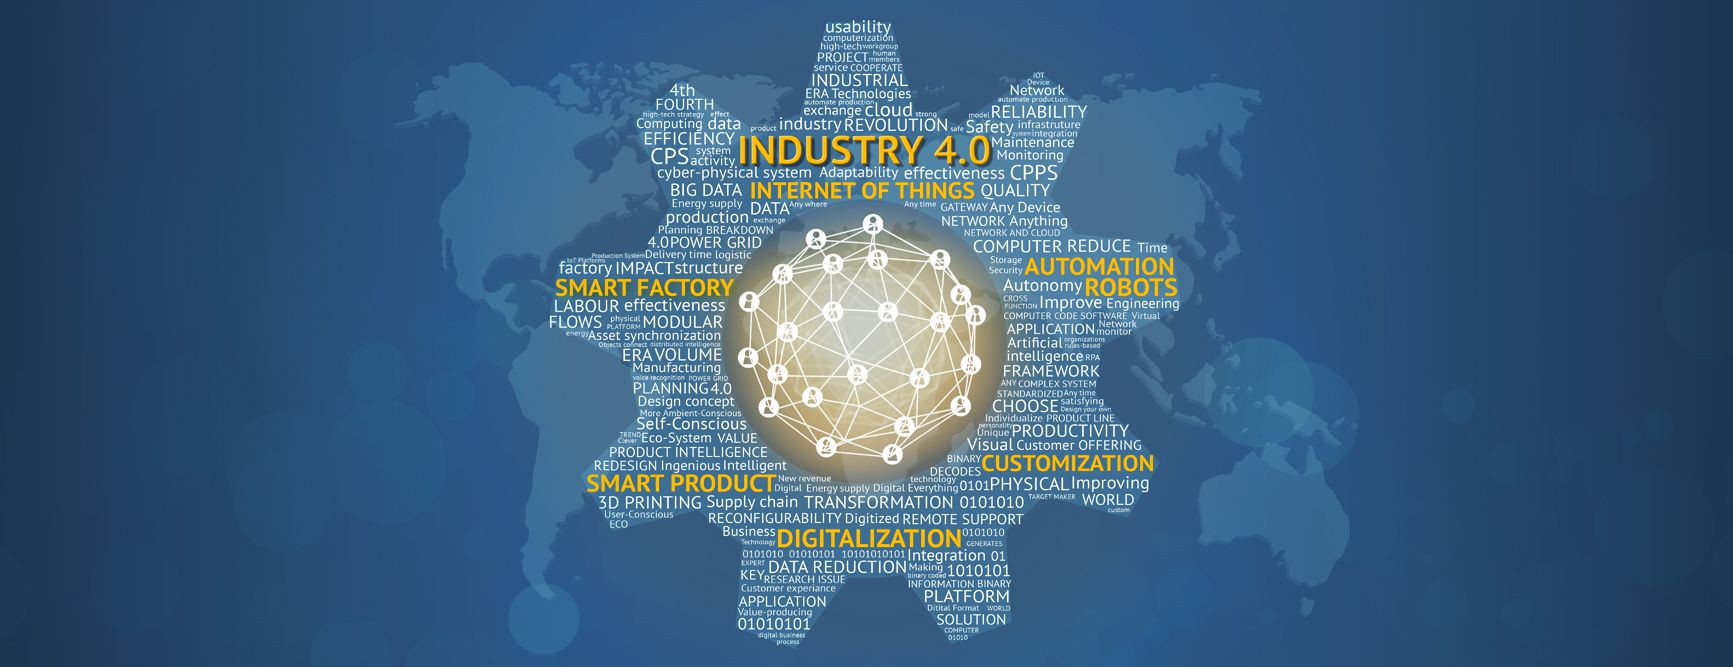 Industria 4.0 per la logistica e le operations